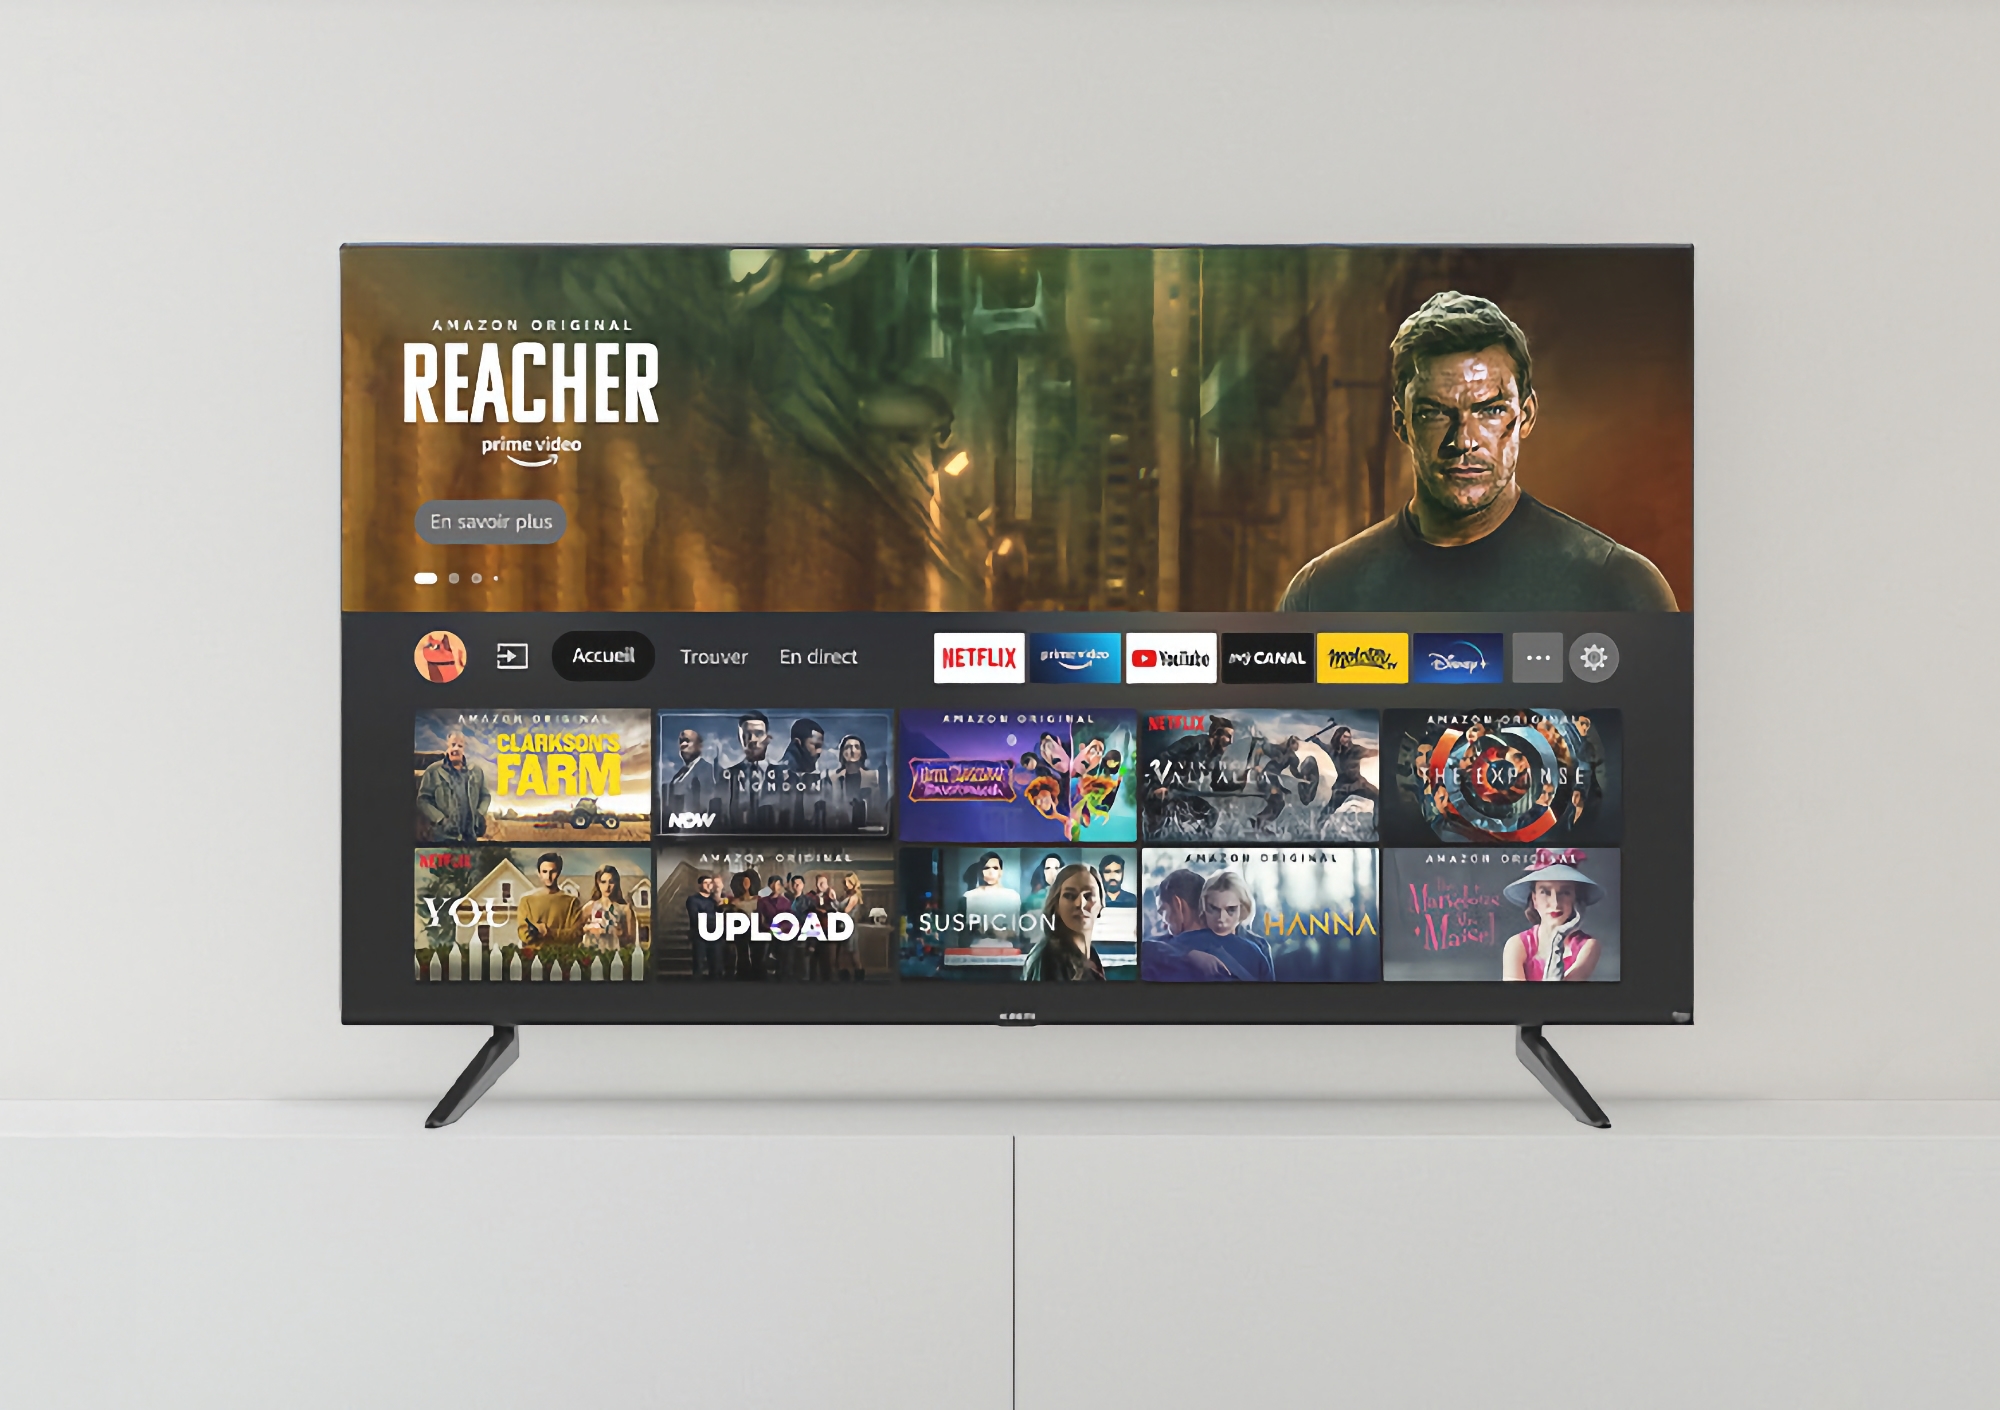 Xiaomi представила в Європі нову версію F2 Fire TV з екраном на 32 дюйми та підтримкою AirPlay